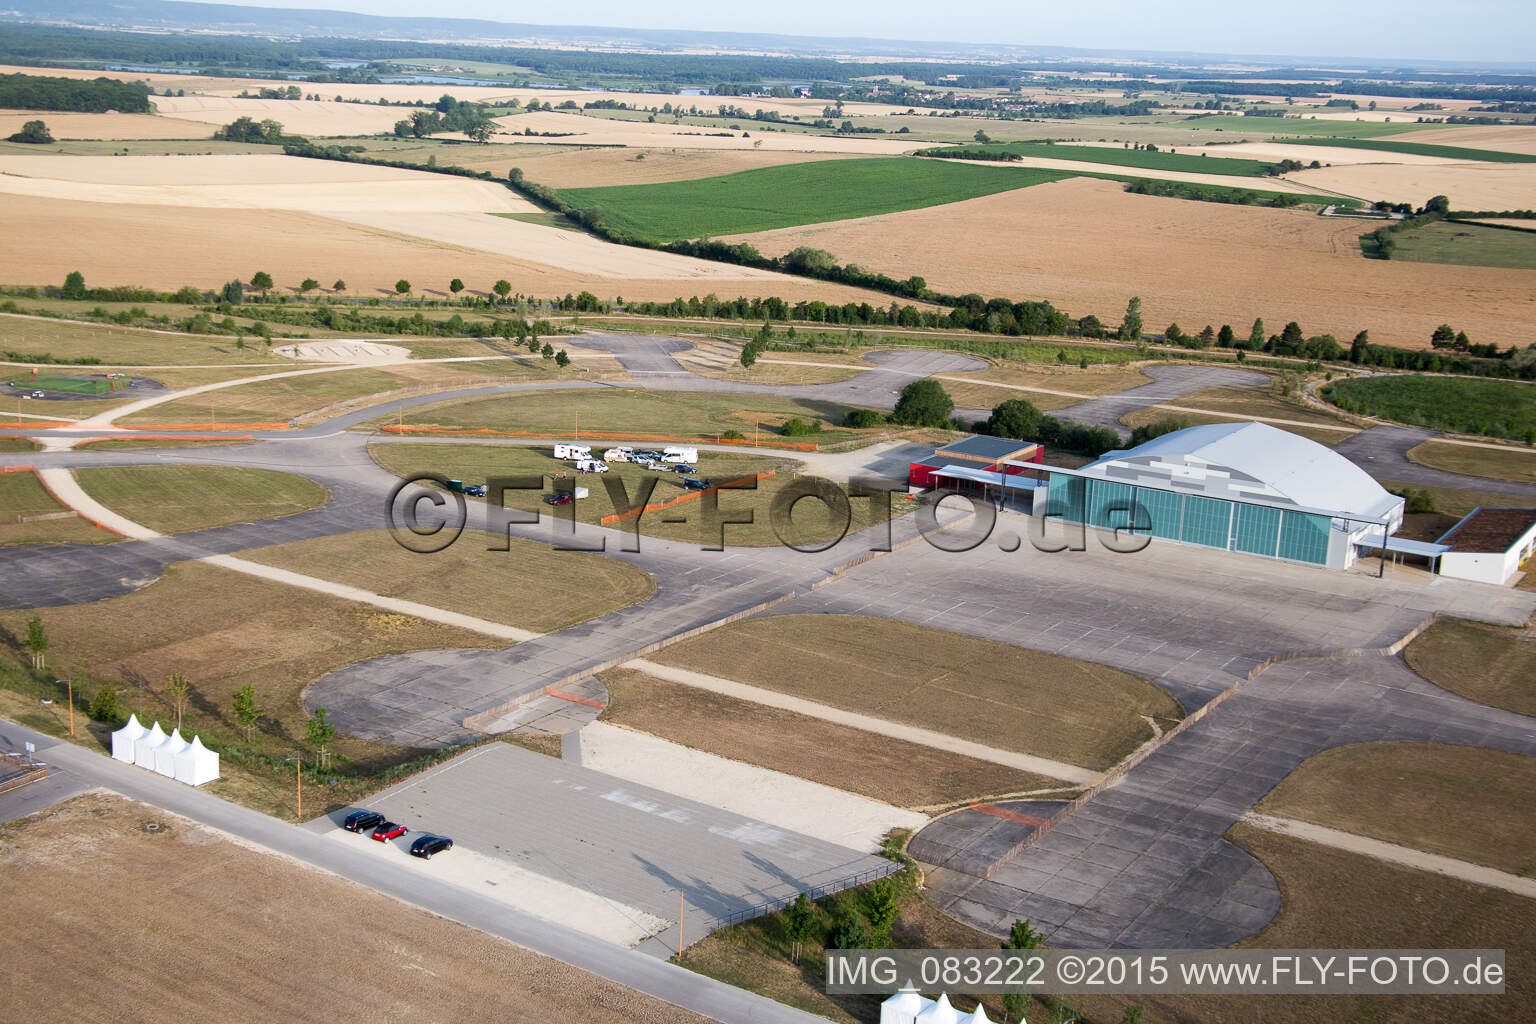 Luftbild von Chambley Aéro in Hagéville im Bundesland Meurthe-et-Moselle, Frankreich